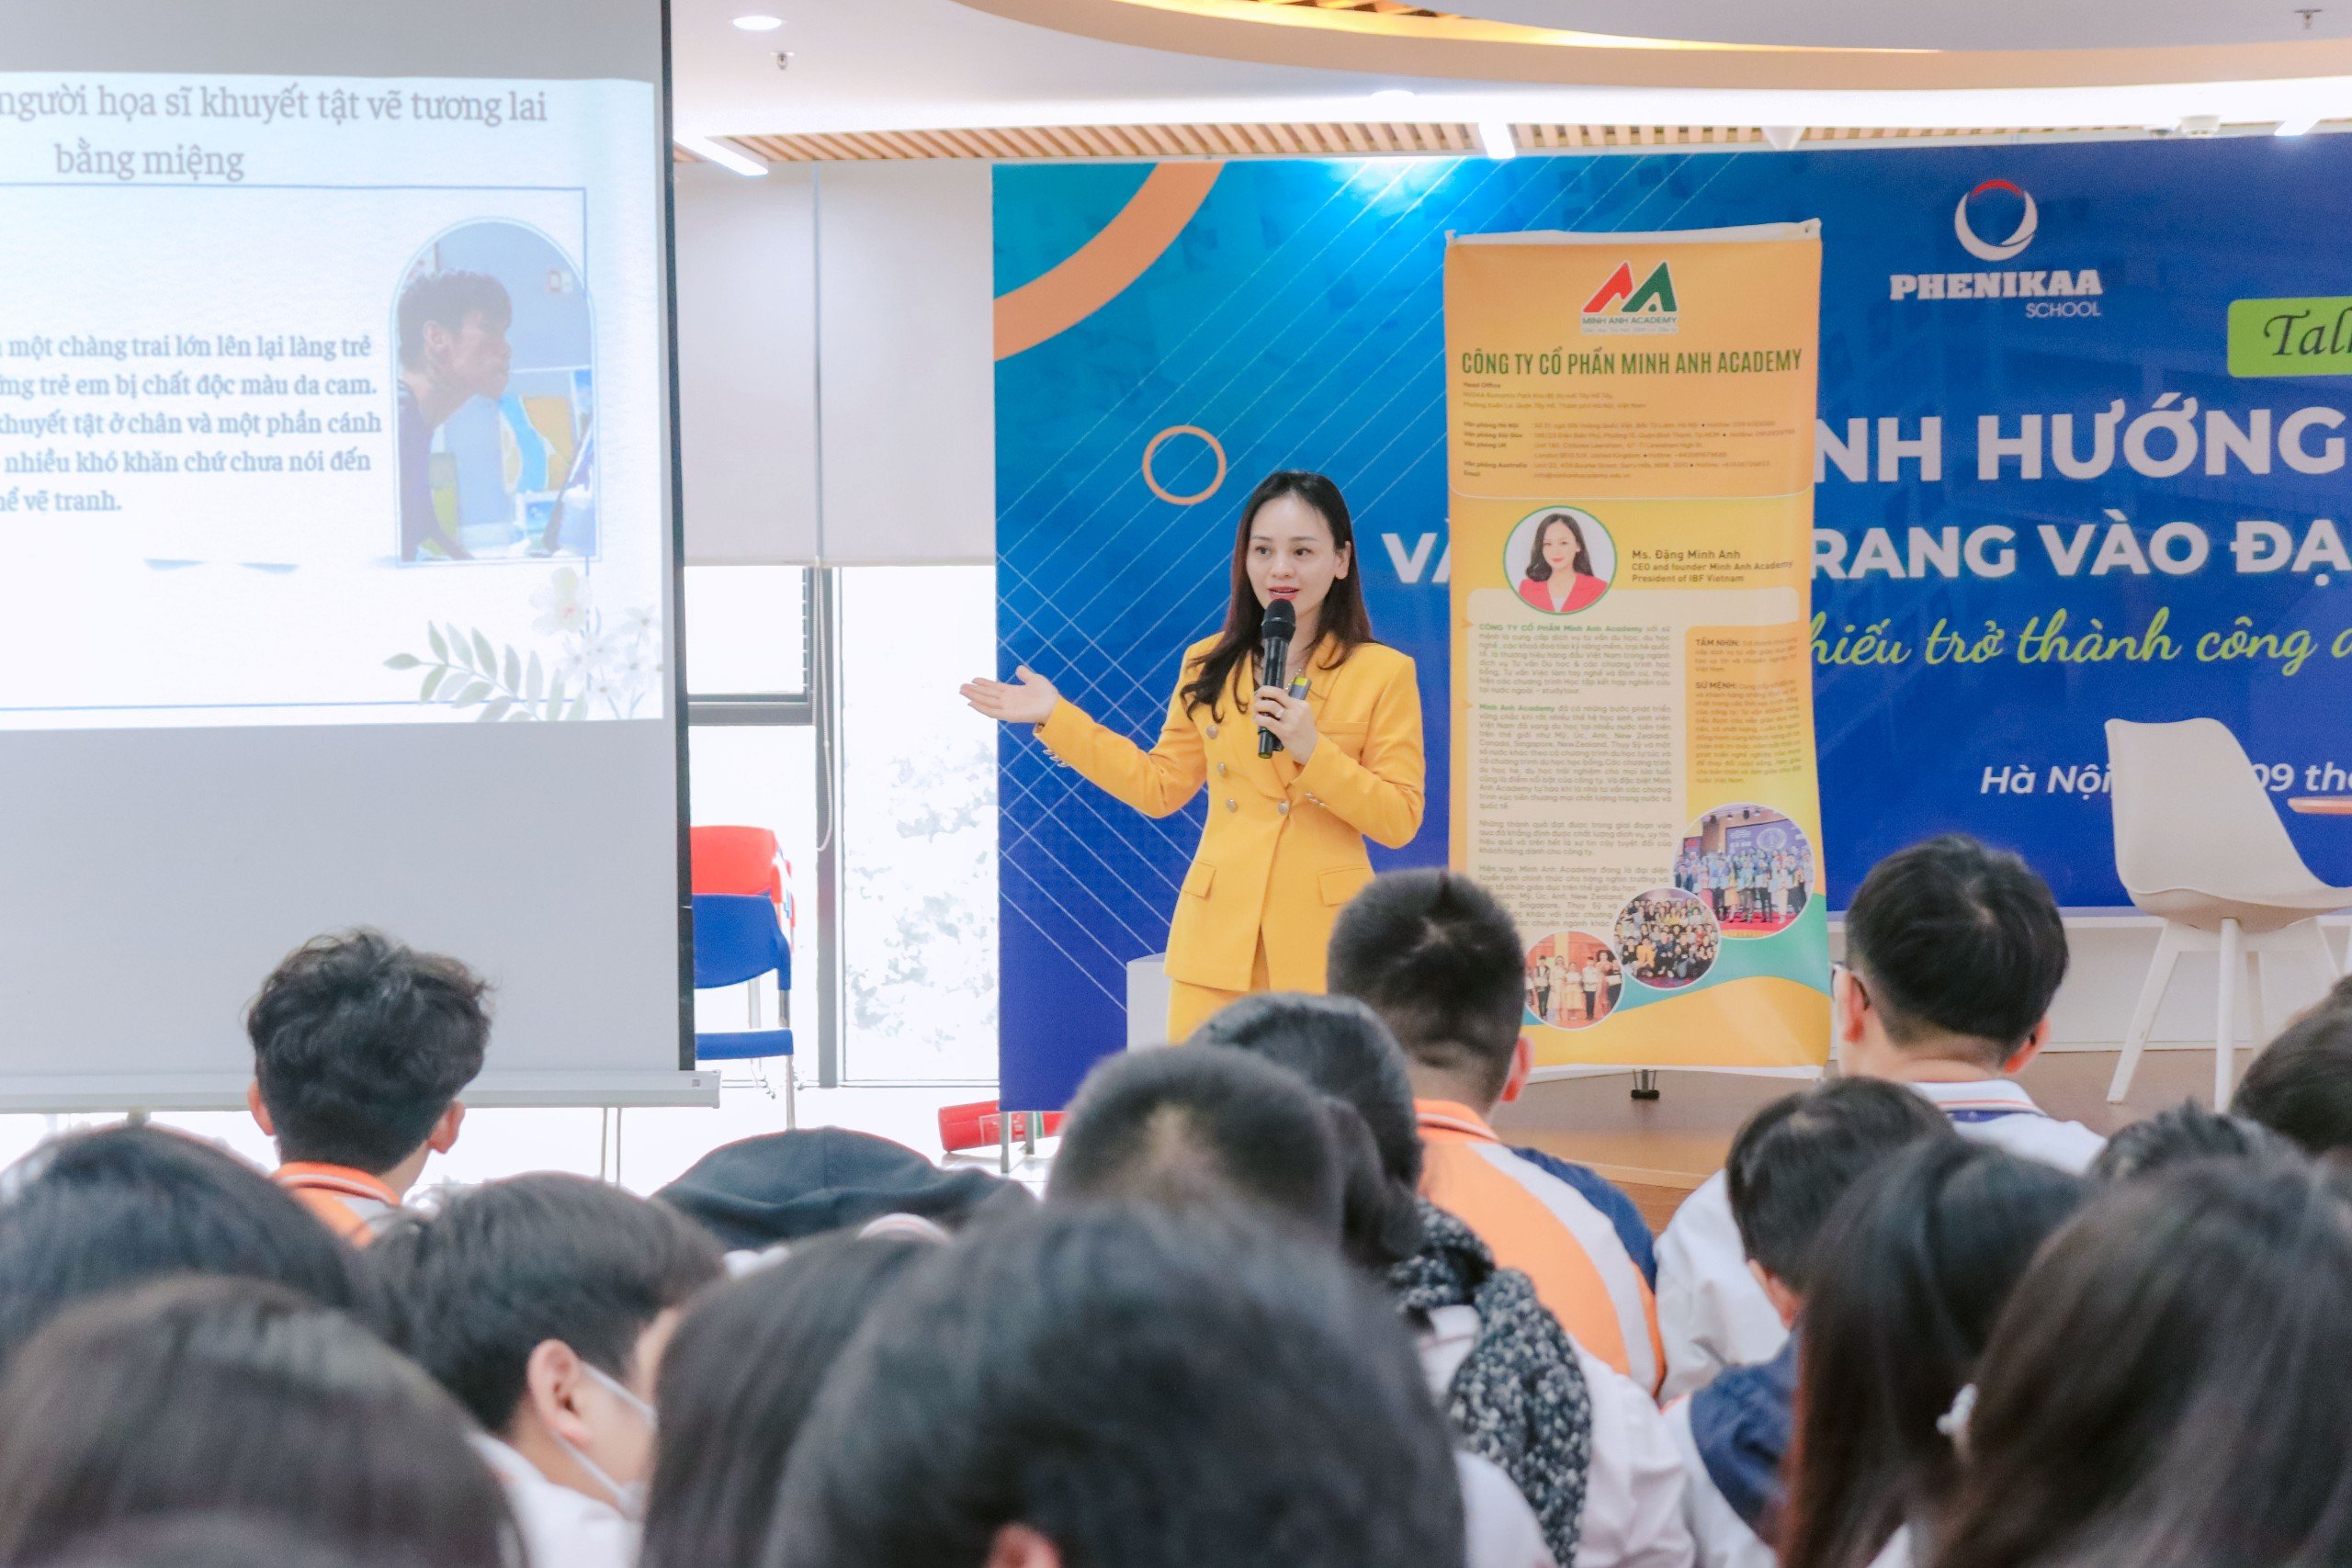 Diễn giả truyền cảm hứng MC Minh Anh trao đổi cùng học sinh tại Talkshow